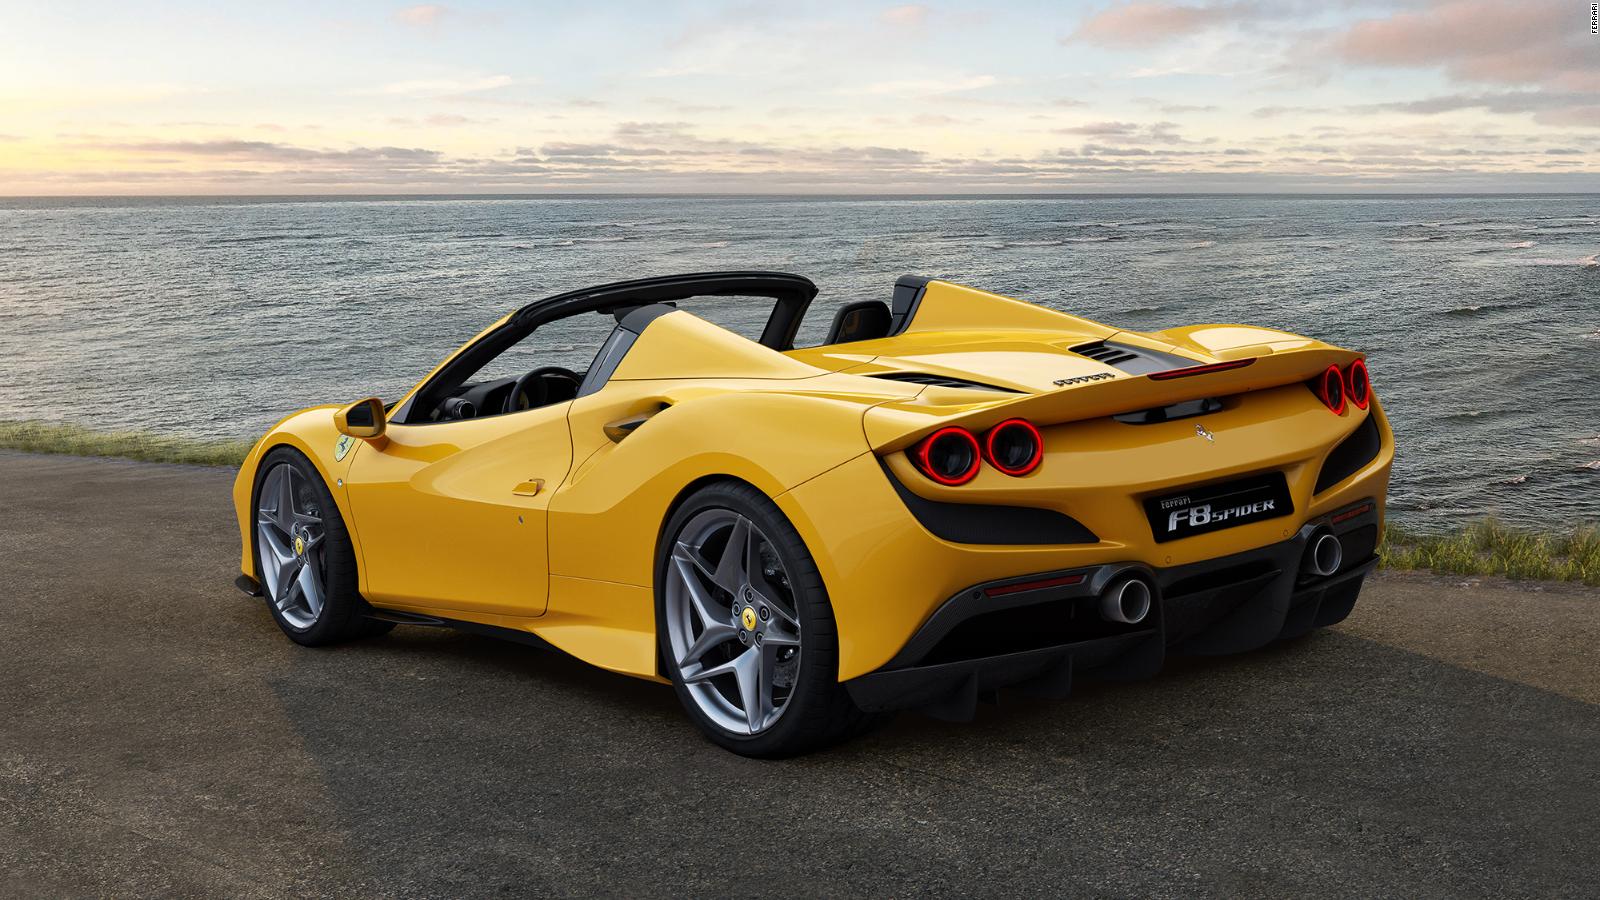 Nuevo Ferrari Convertible Para Los Amantes De Los Autos Deportivos De